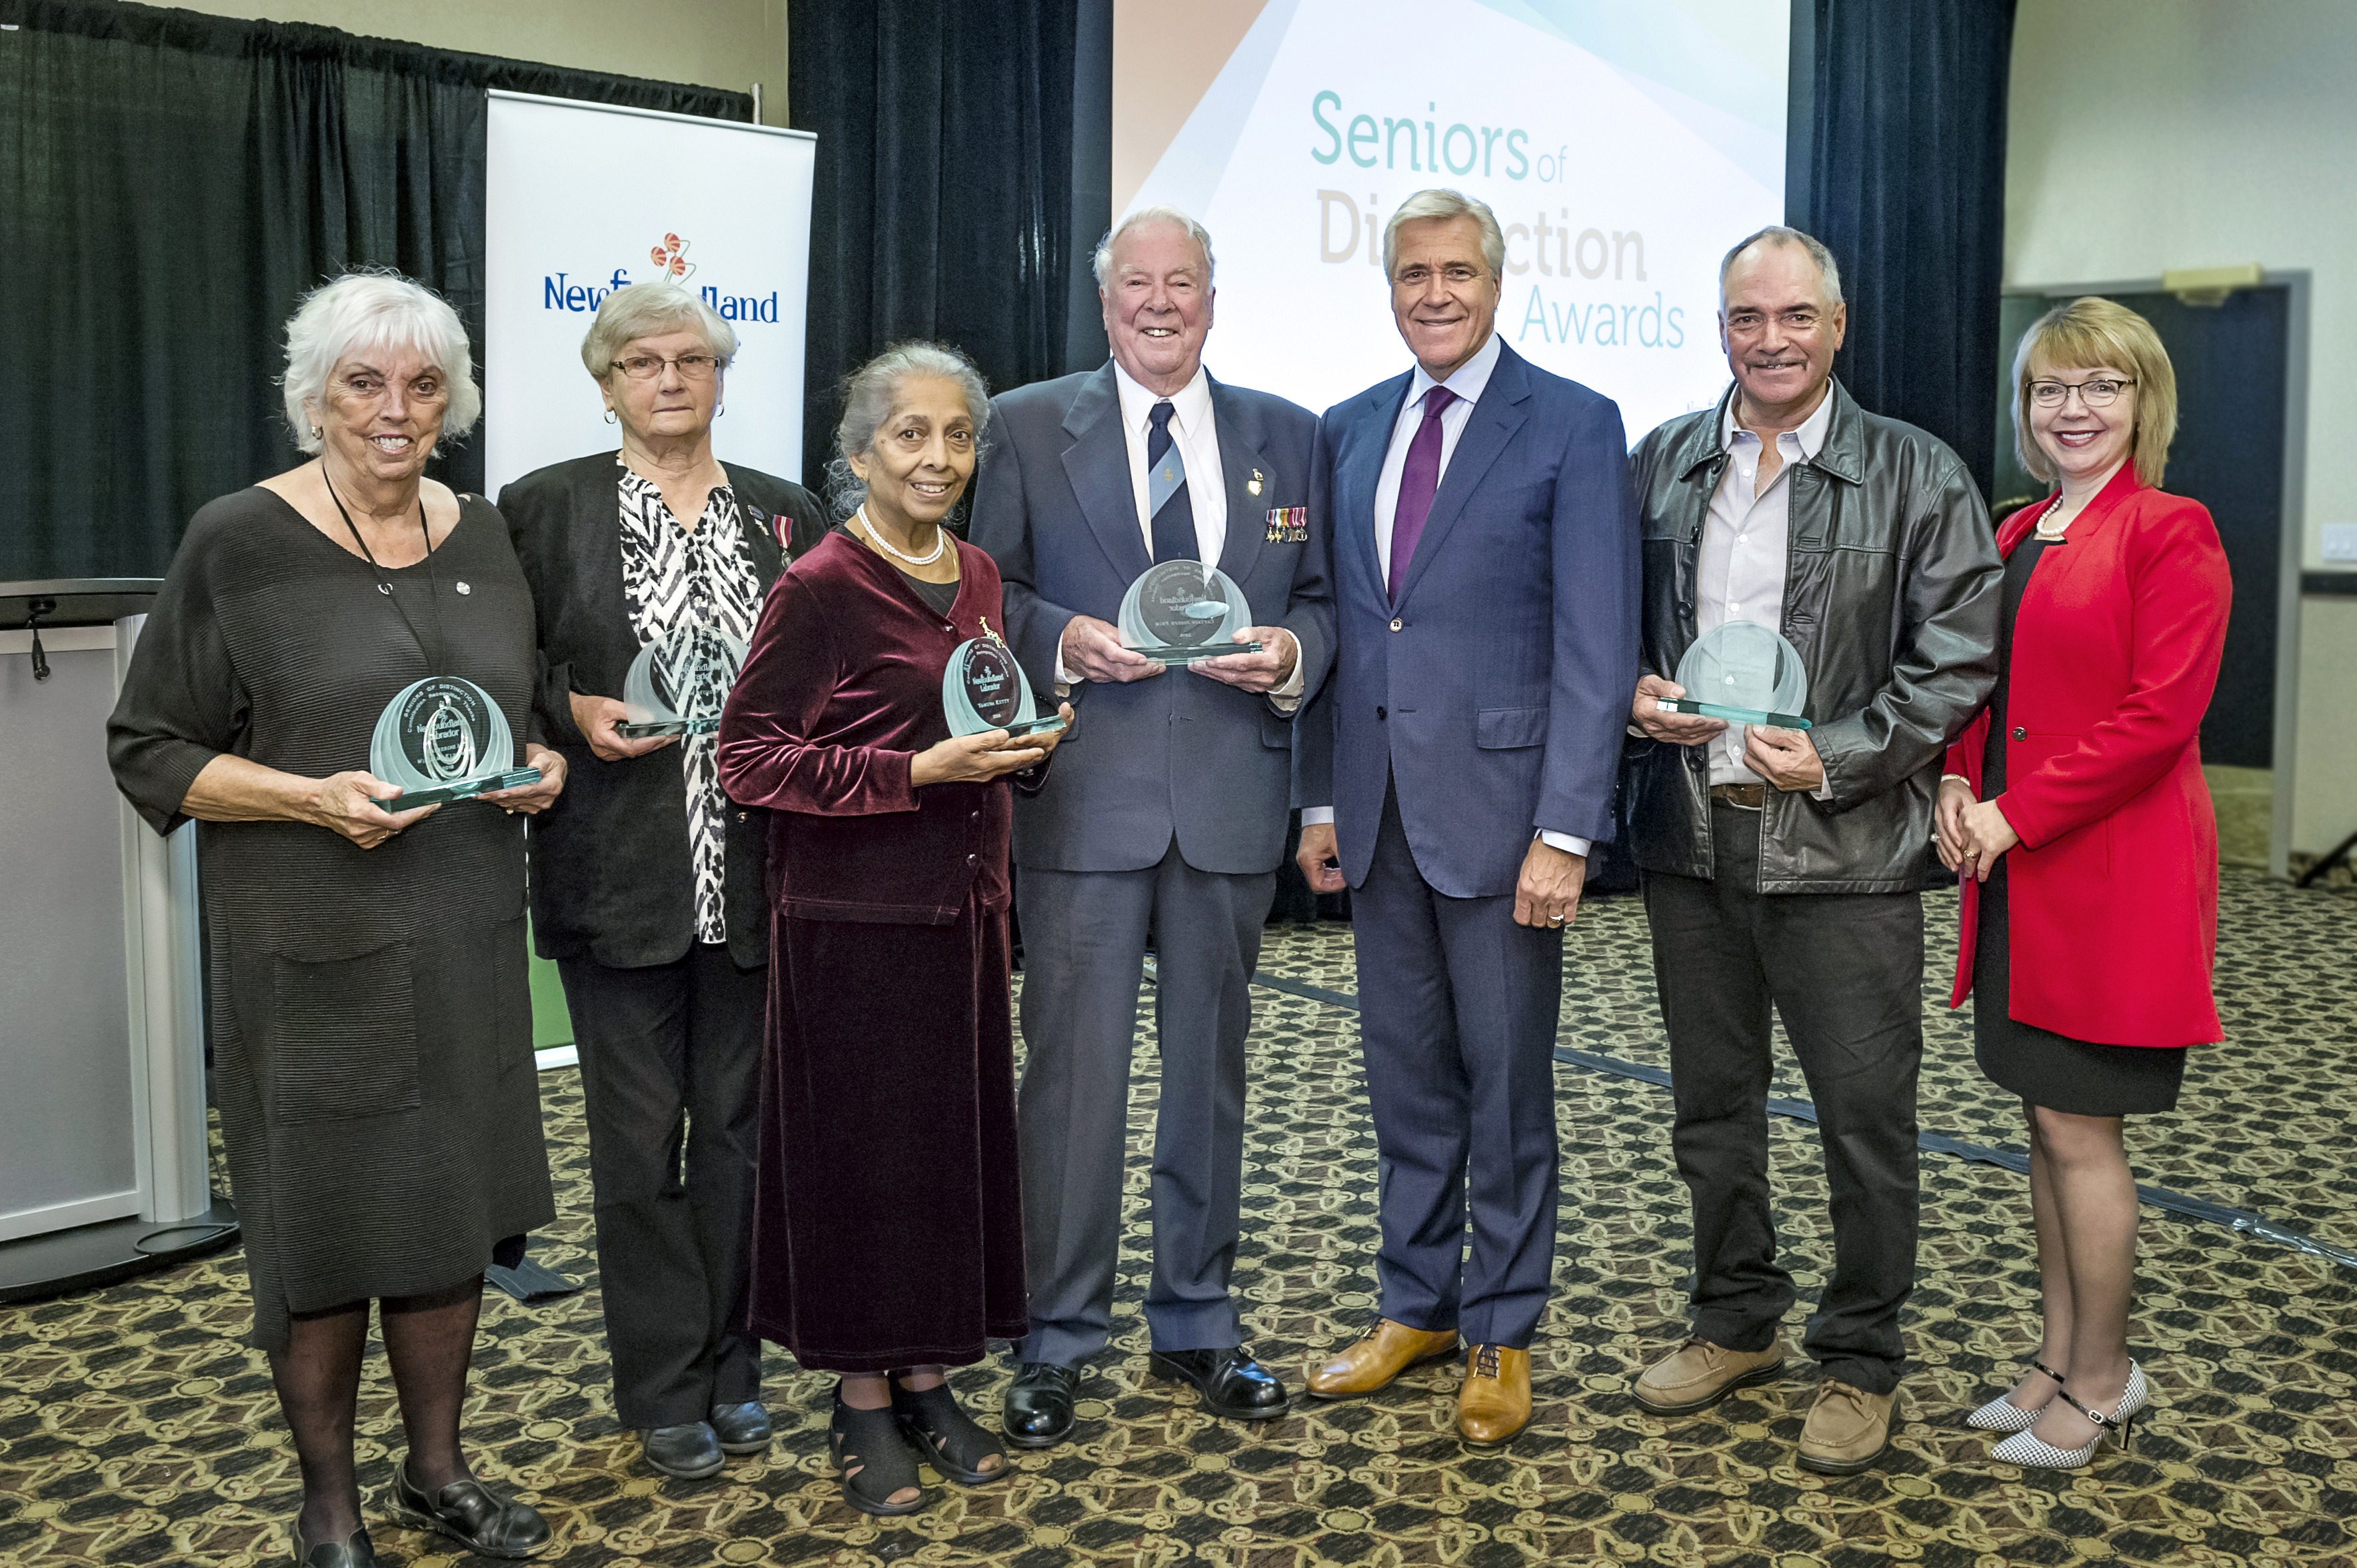 Seniors of Distinction Recipients 2018